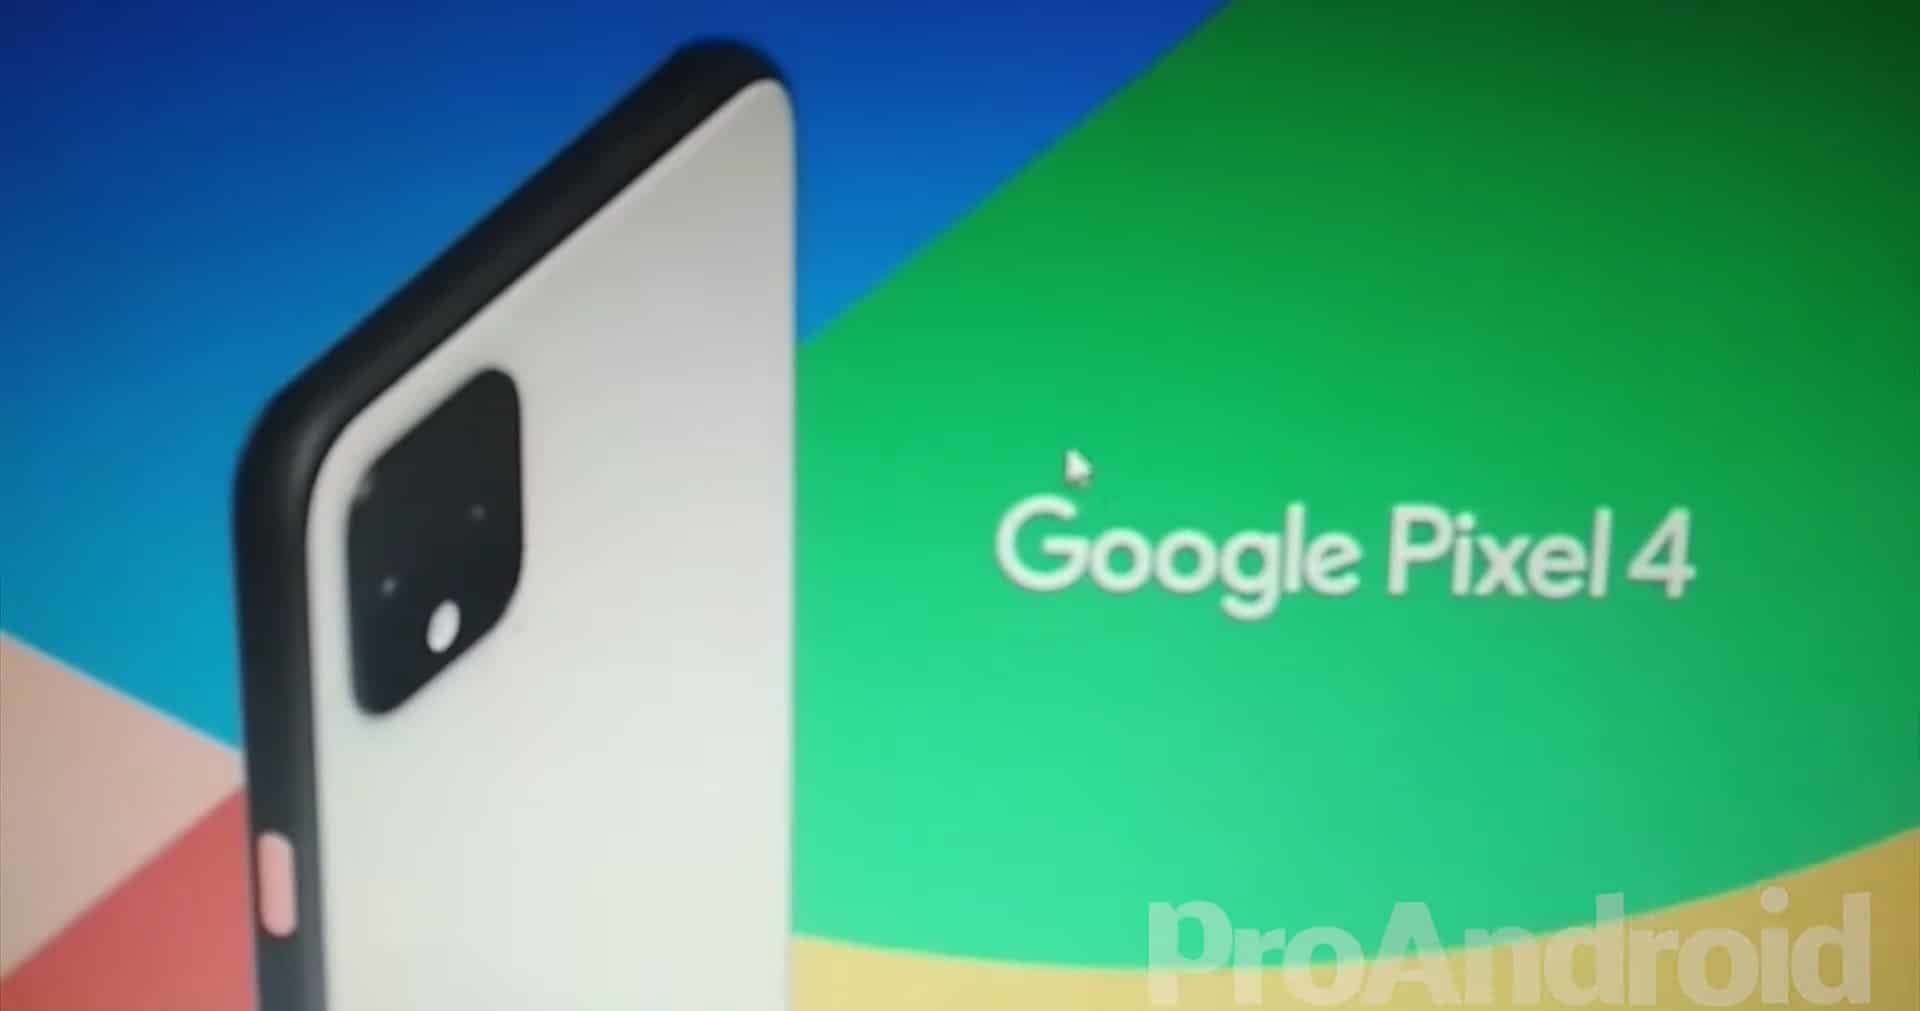 หลุดวิดีโอเปิดตัว Google Pixel 4 เผยฟีเจอร์เด่น ควบคุมเครื่องไม่แตะจอ สั่งงานด้วยเสียง กล้องล่าช้าง 1